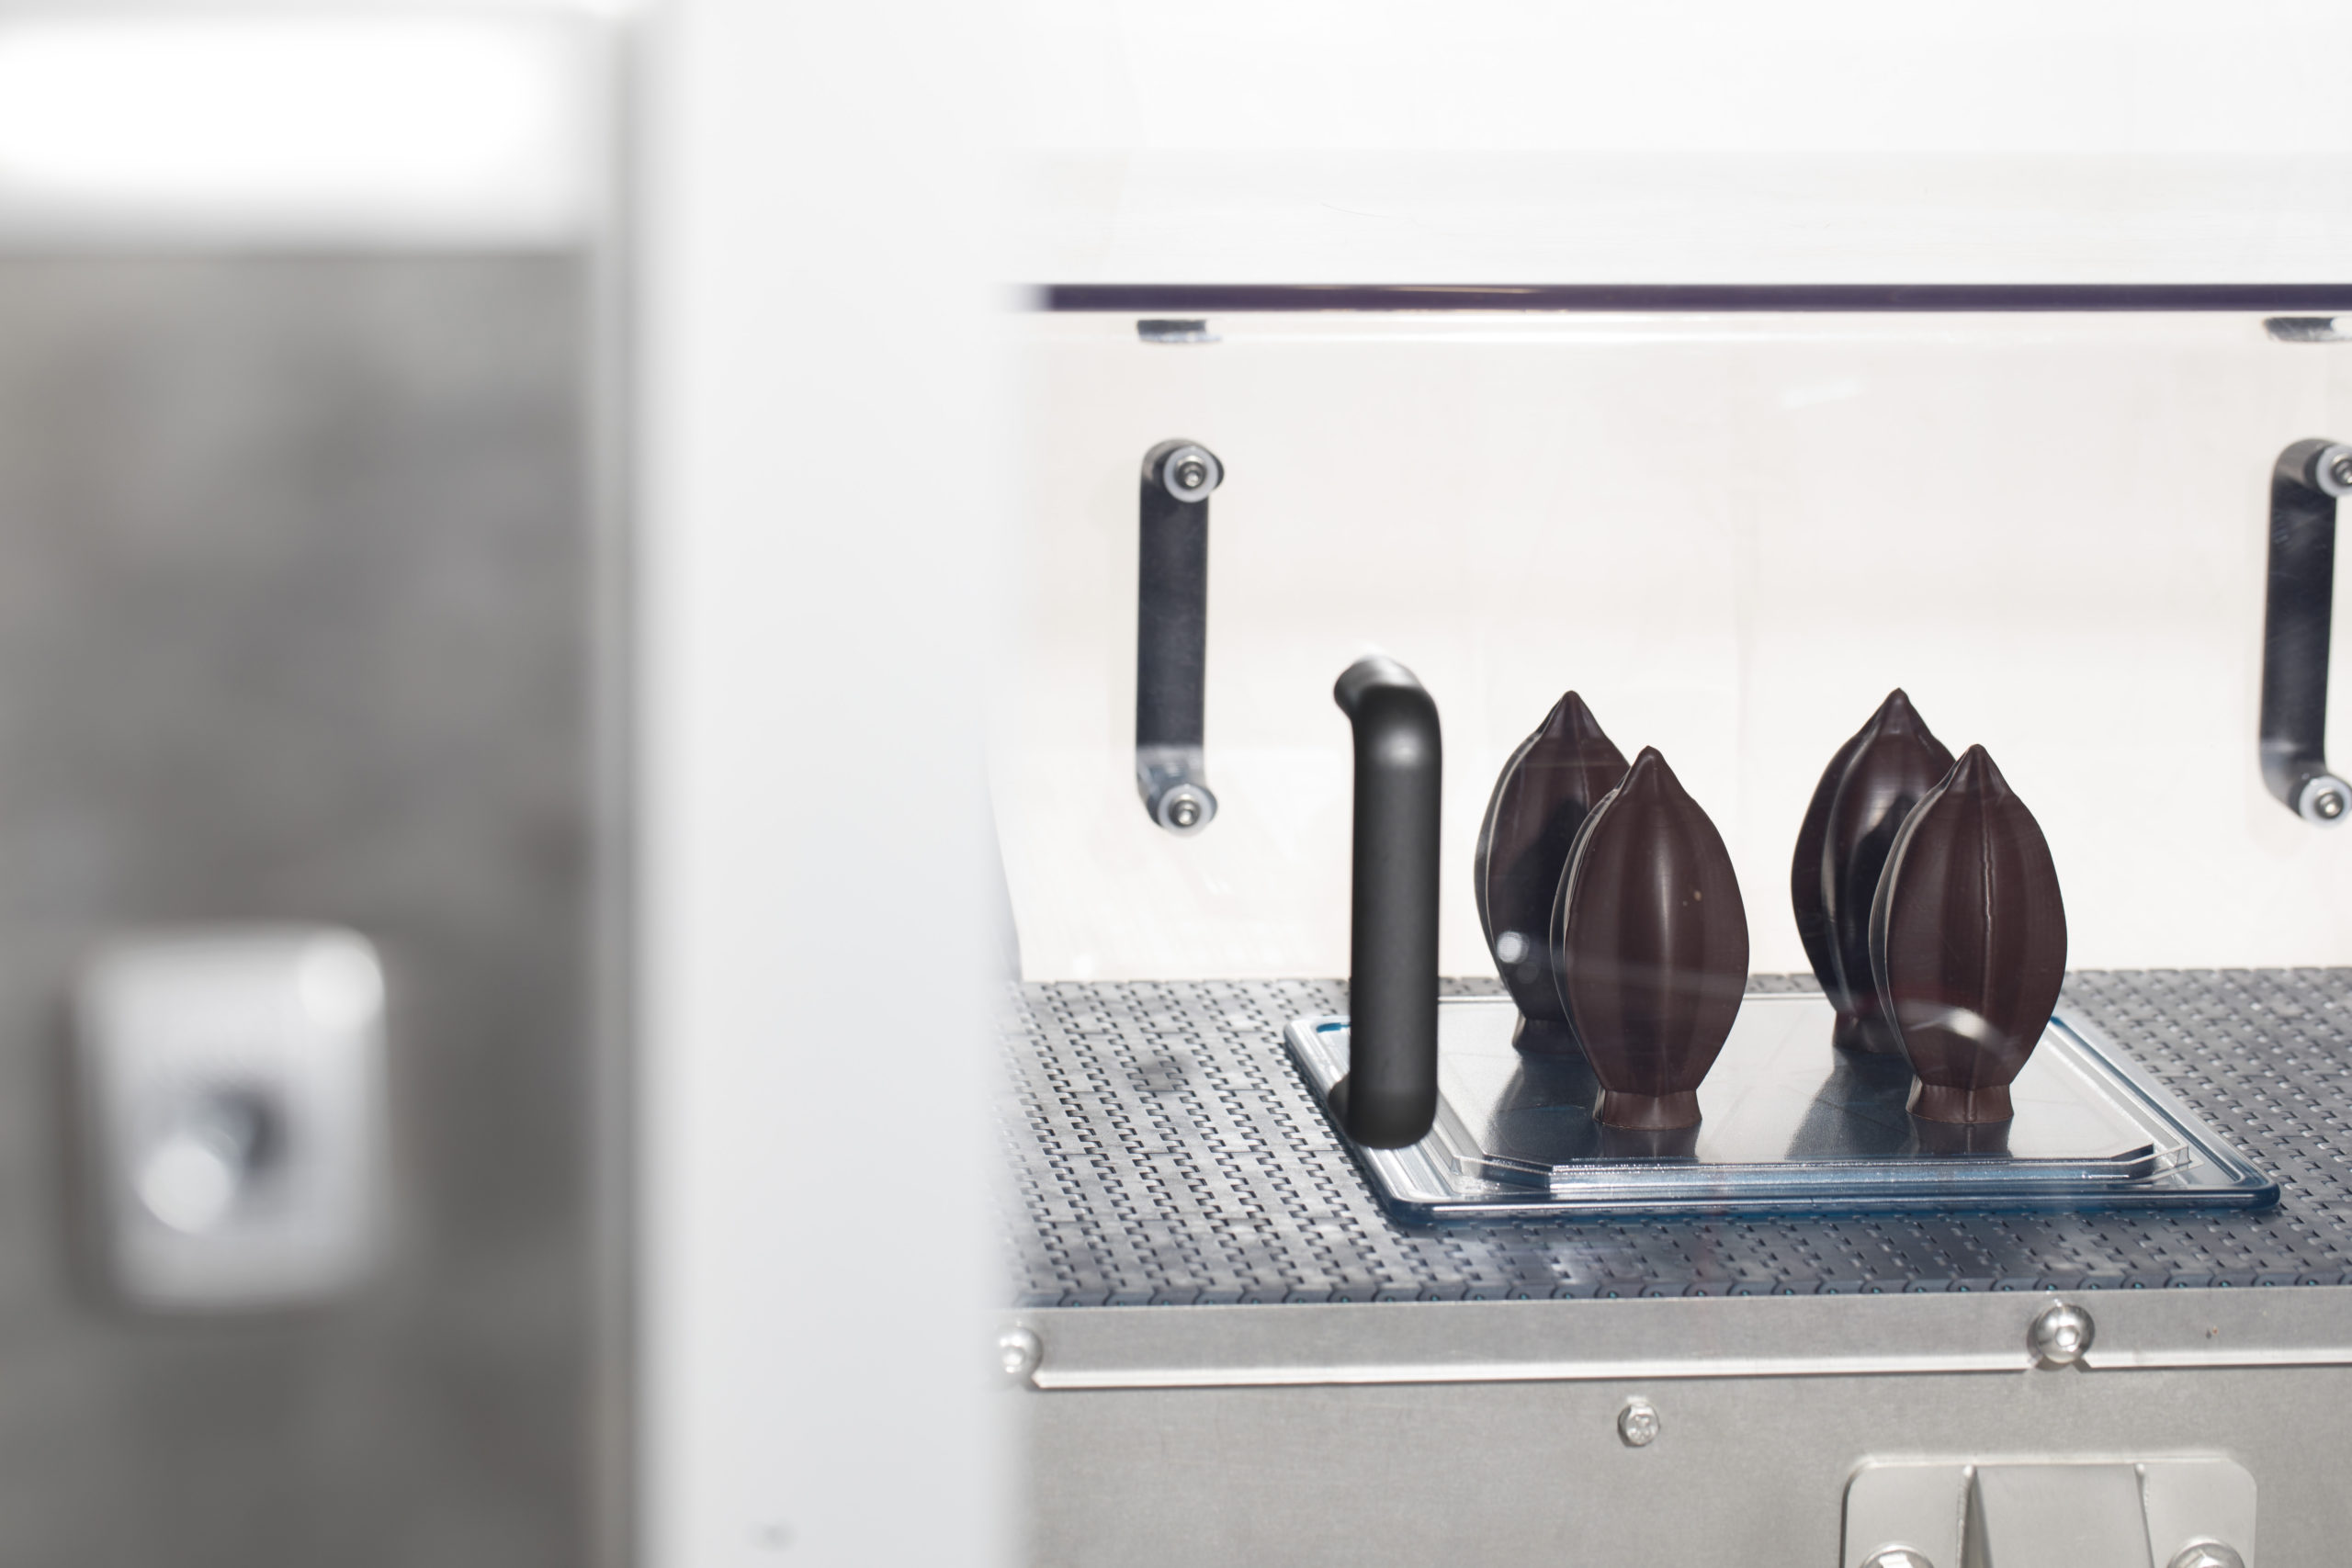 3D printing chocolate – Fun, fad, or panacea?